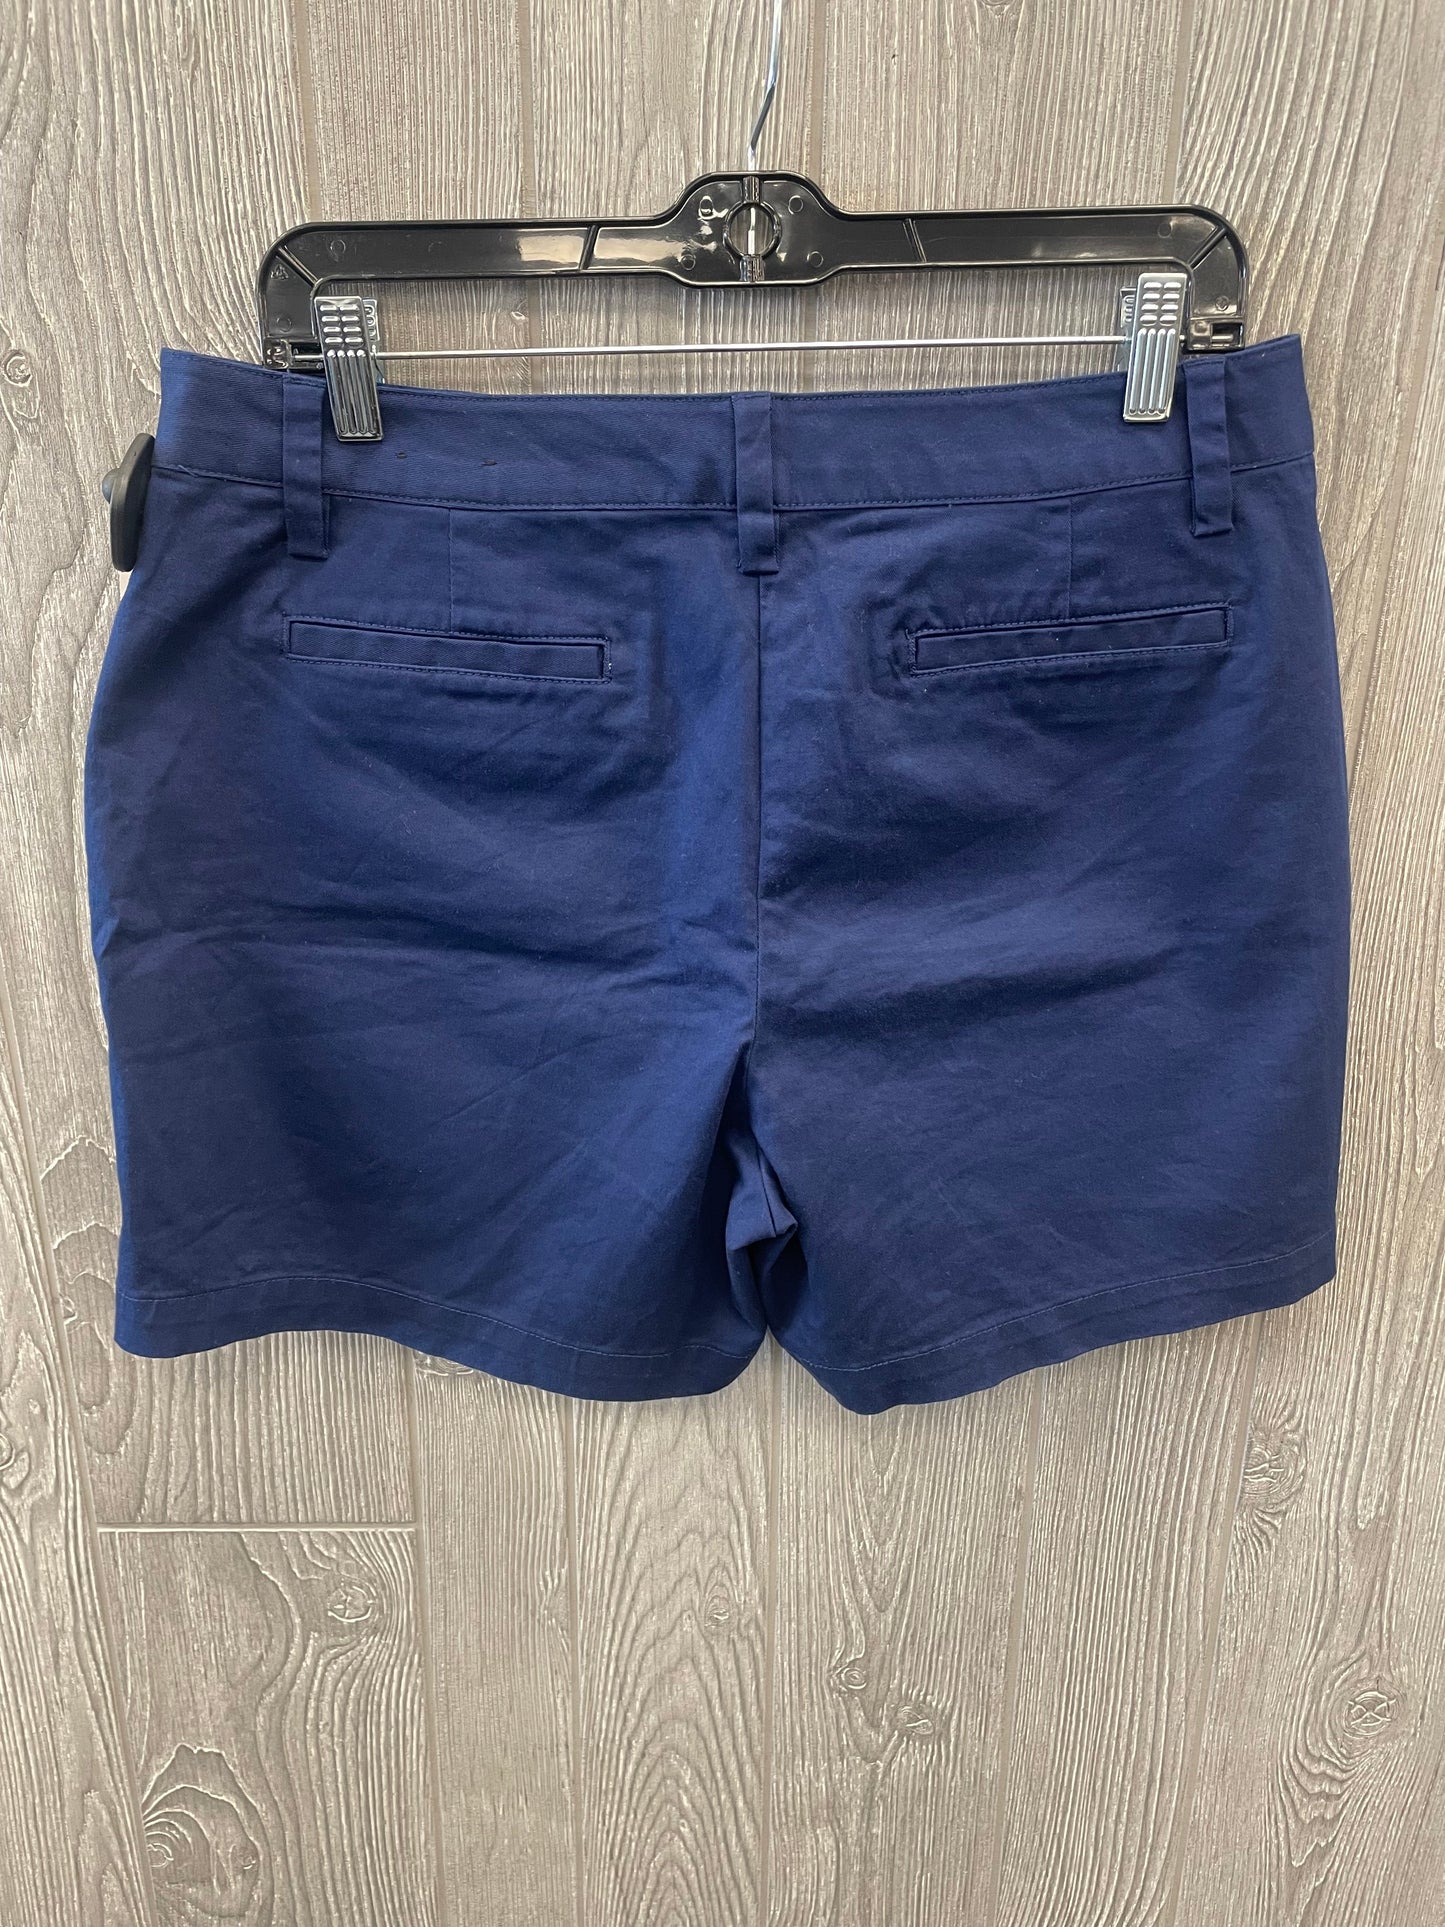 Blue Shorts Lands End, Size 10